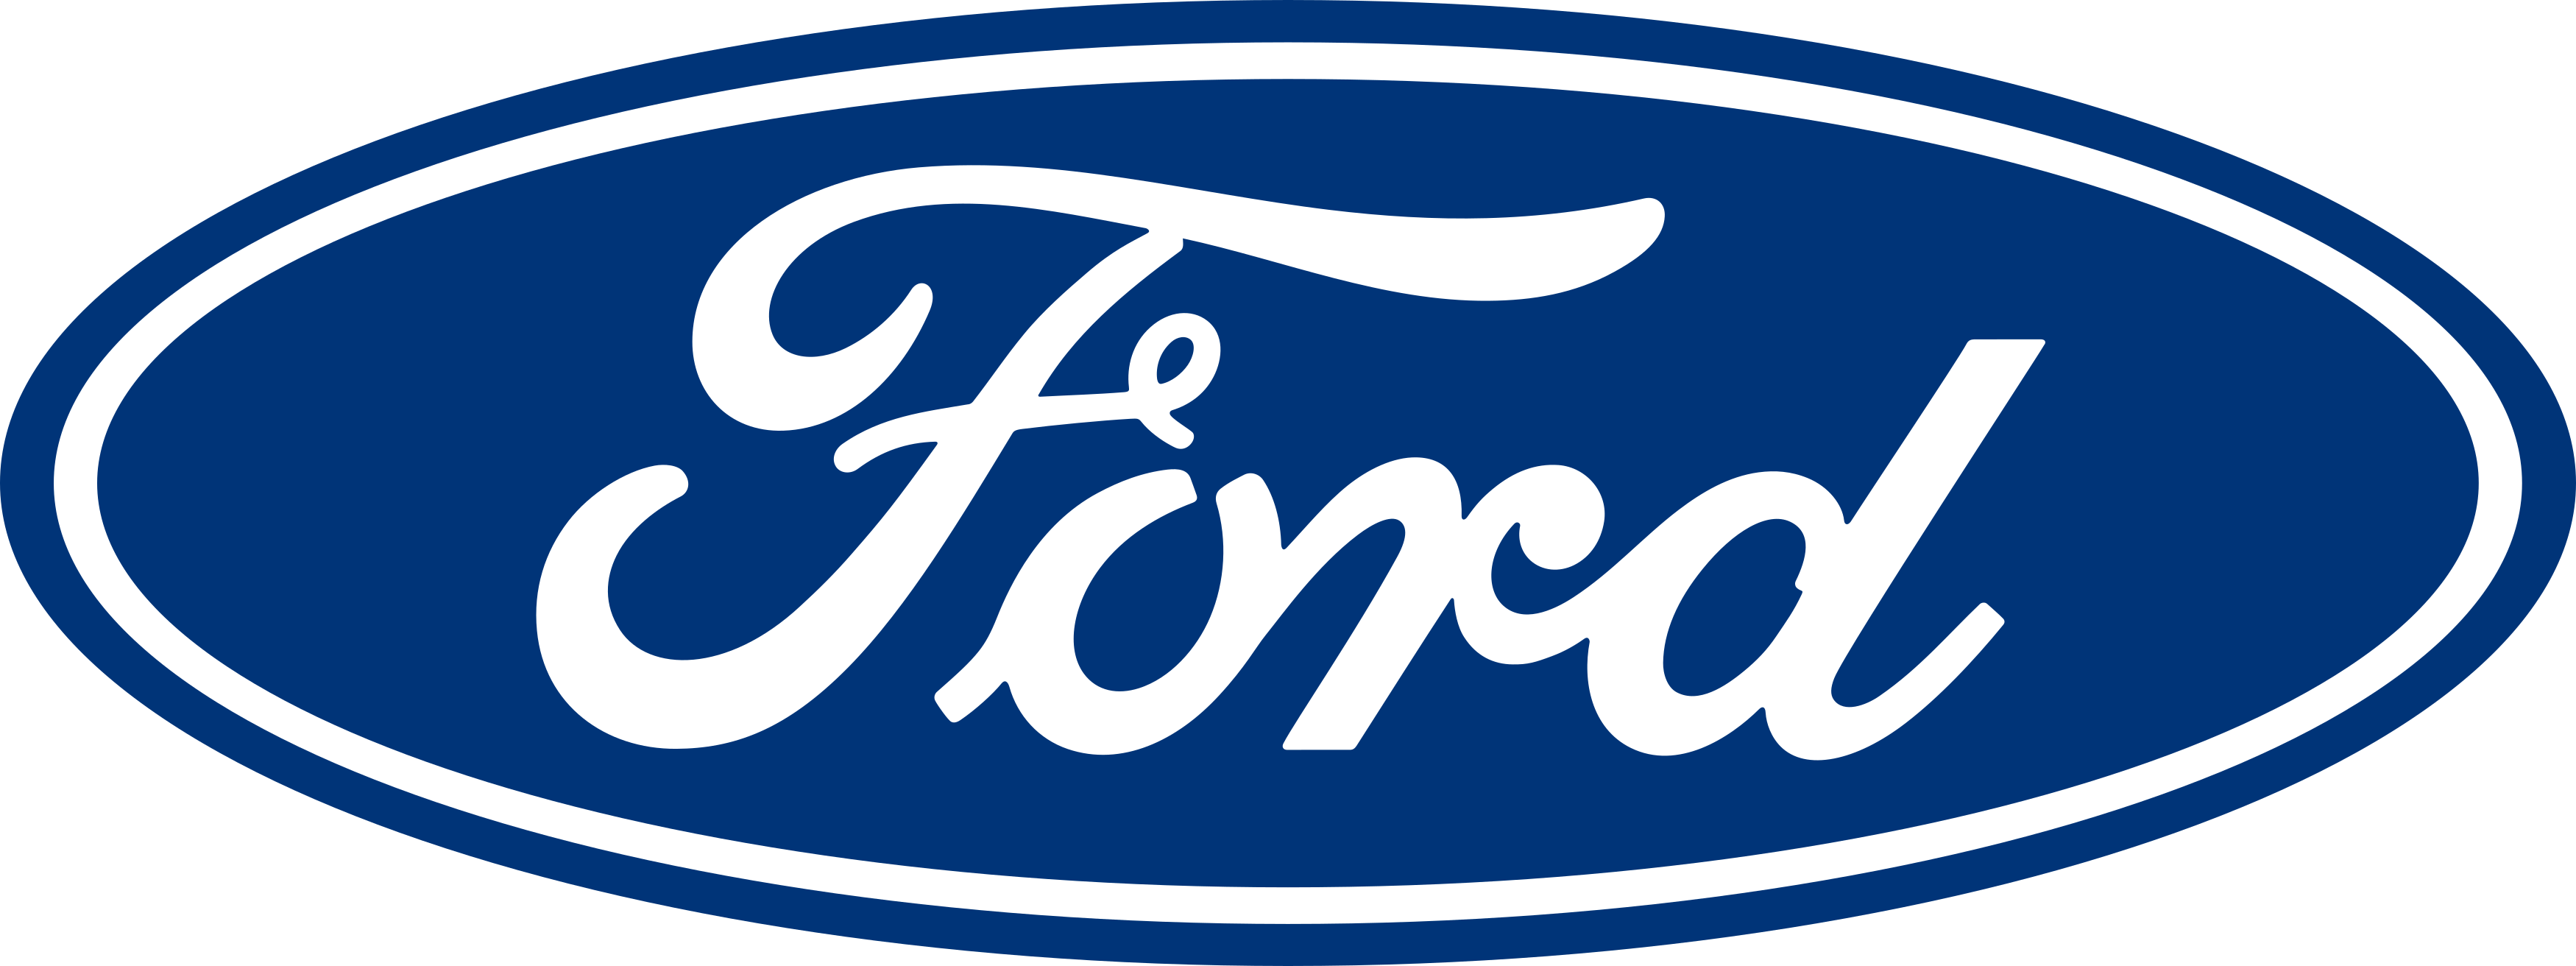 marcas nomes de pessoa ford